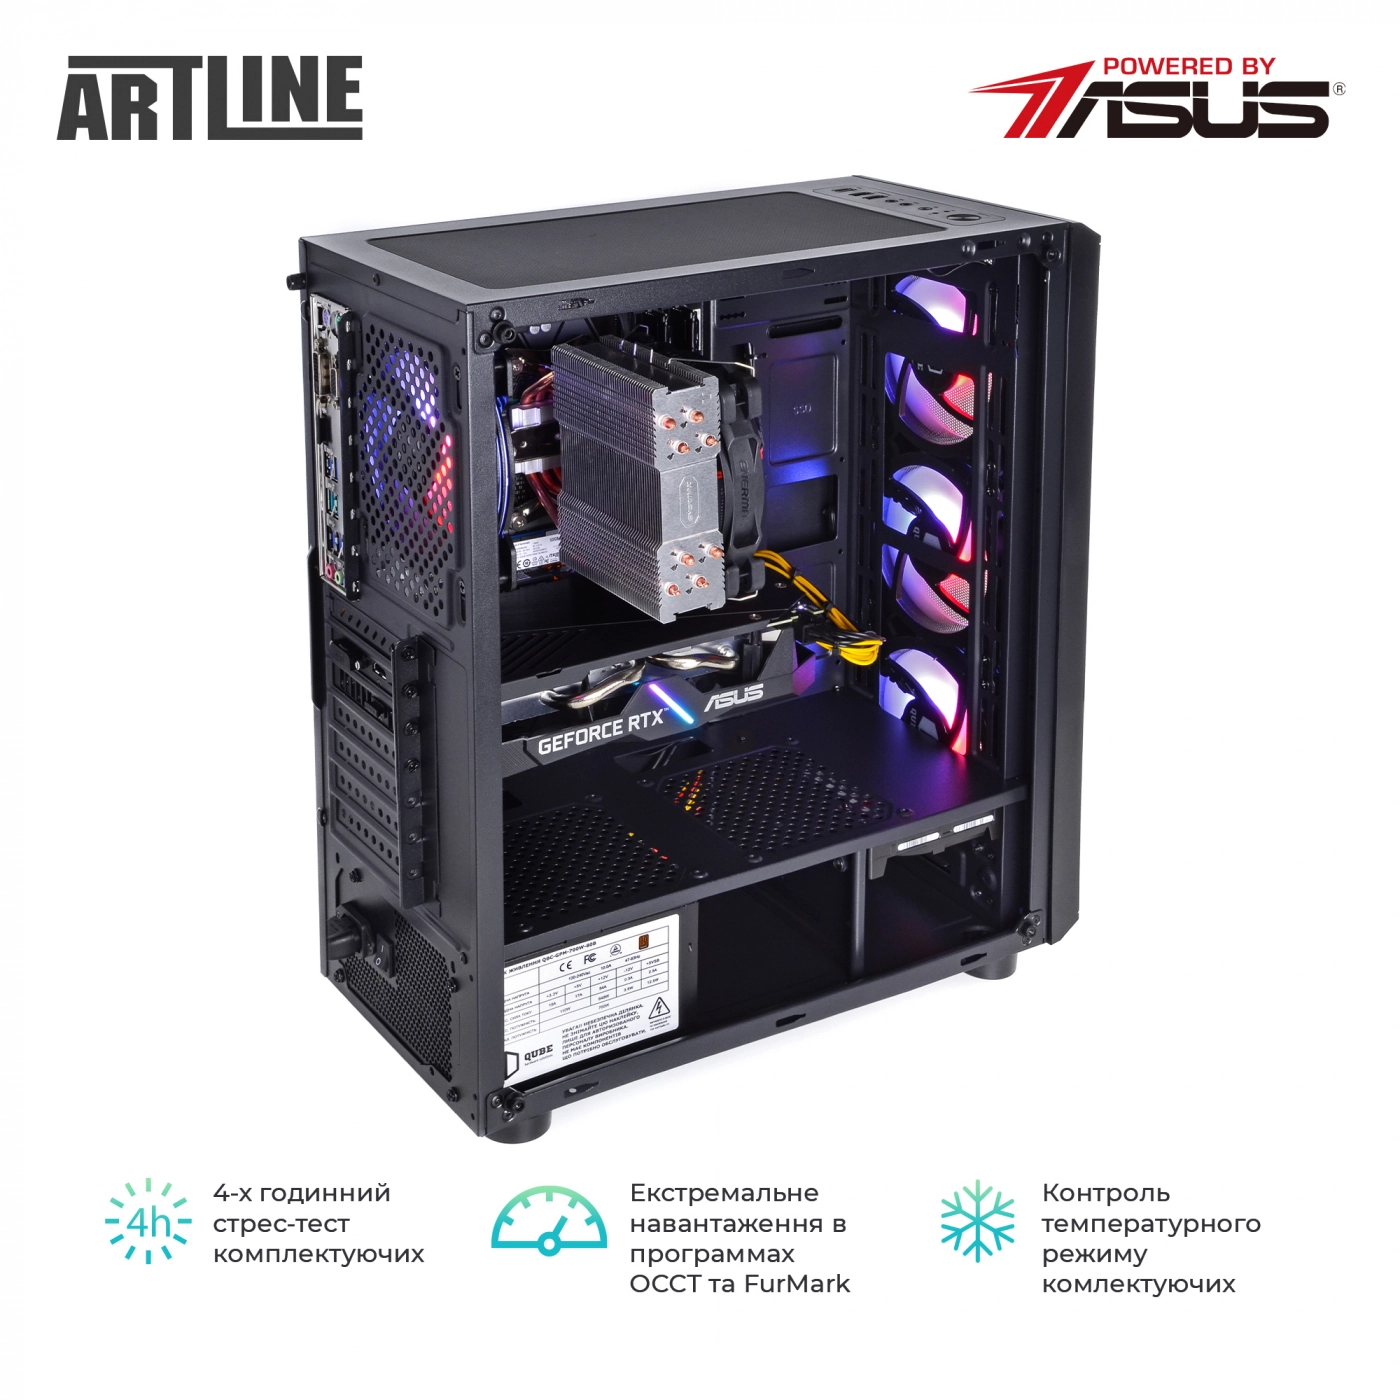 Купить Компьютер ARTLINE Gaming X75v20 - фото 9